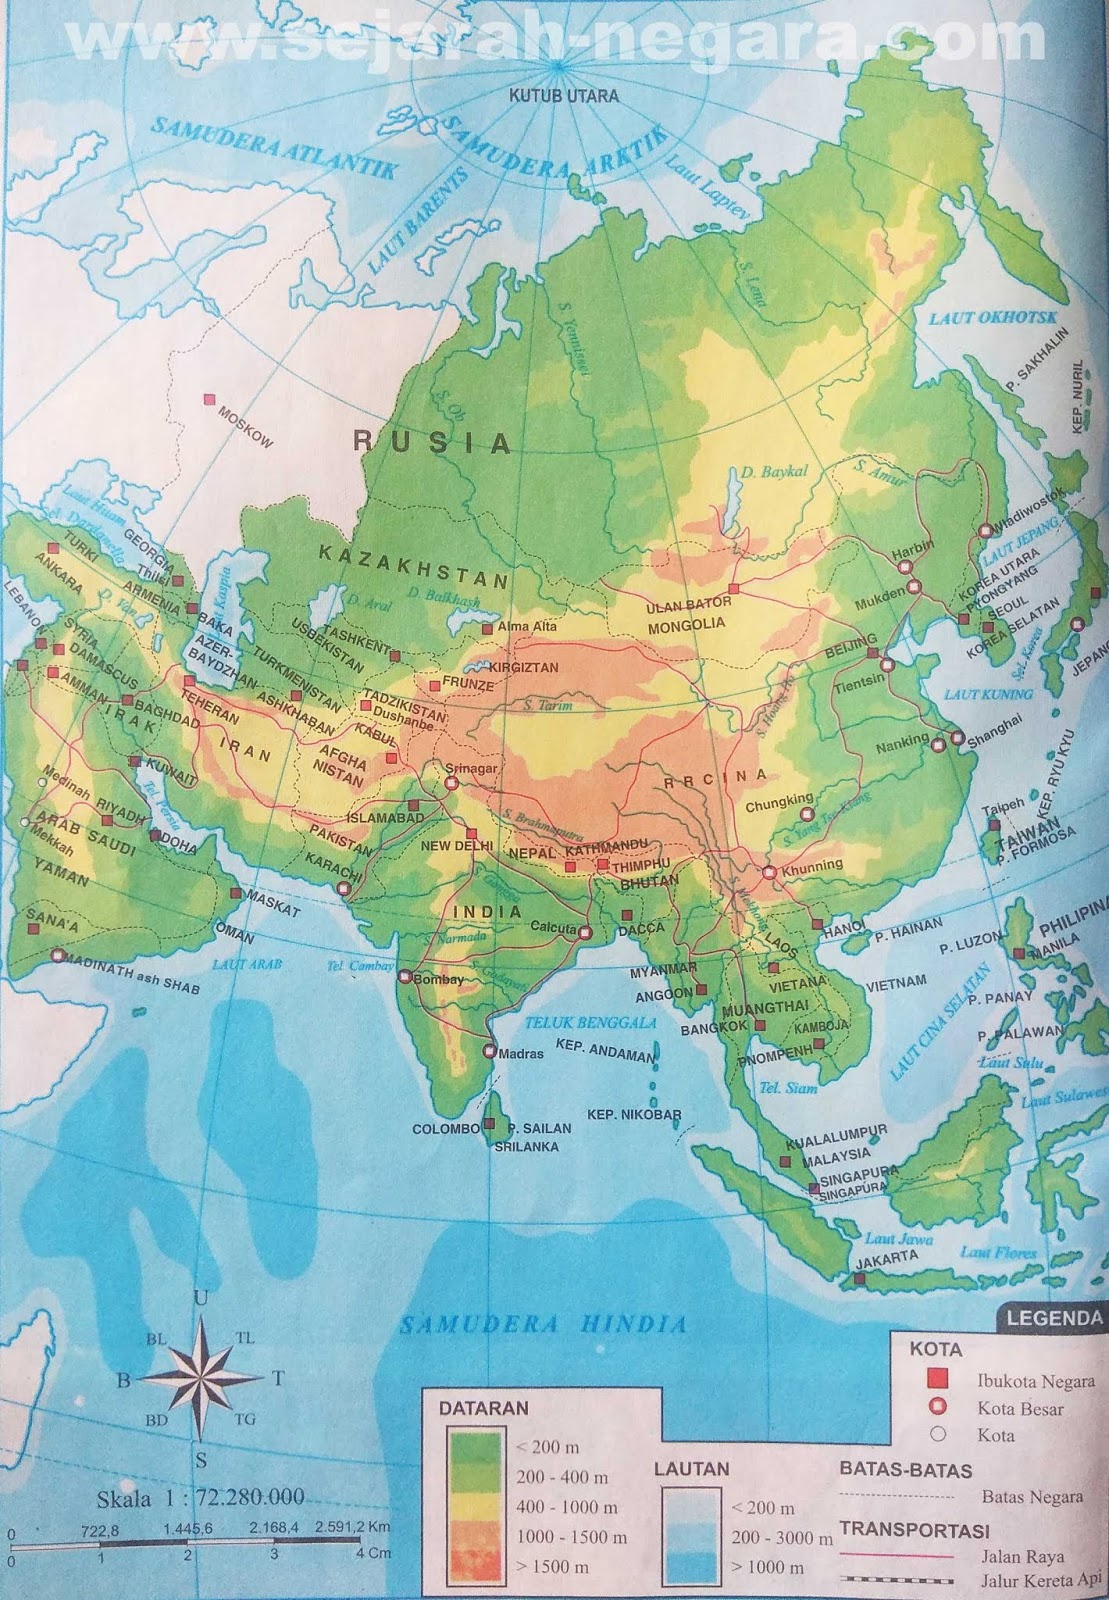 Peta Benua Asia Lengkap Web Sejarah | Images and Photos finder